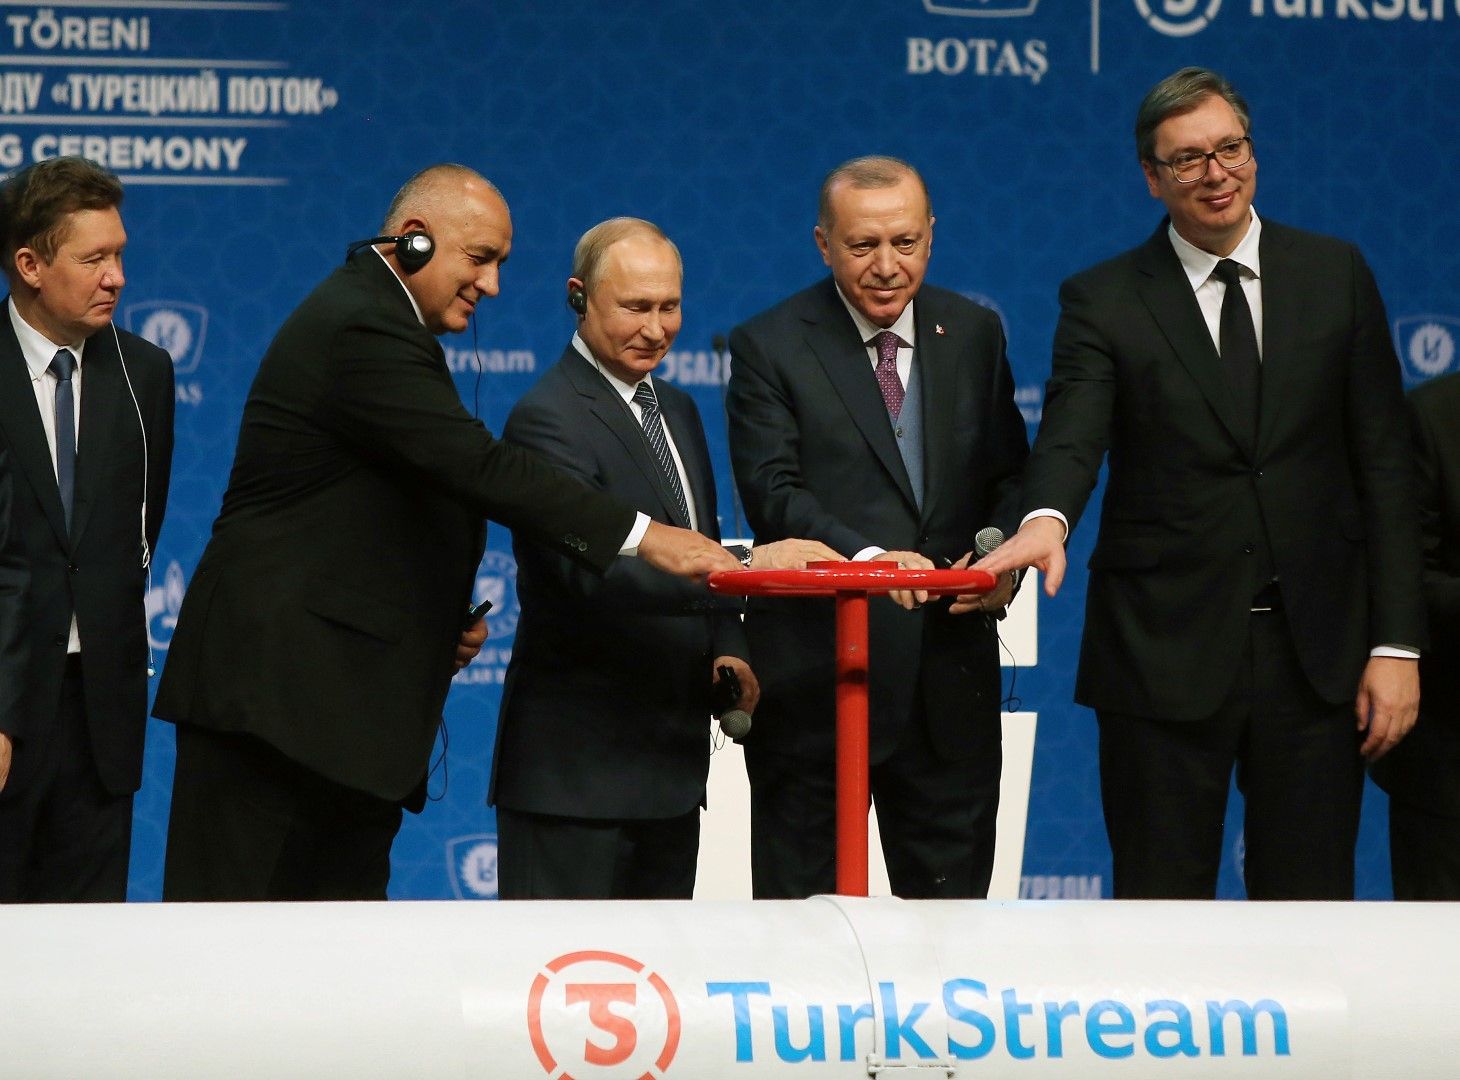 Министър-председателят Бойко Борисов участва в тържествената церемония по откриването на газопровода "Турски поток”. На откриването бяха президентите на Турция Реджеп Тайип Ердоган, Русия Владимир Путин и Сърбия Александър Вучич